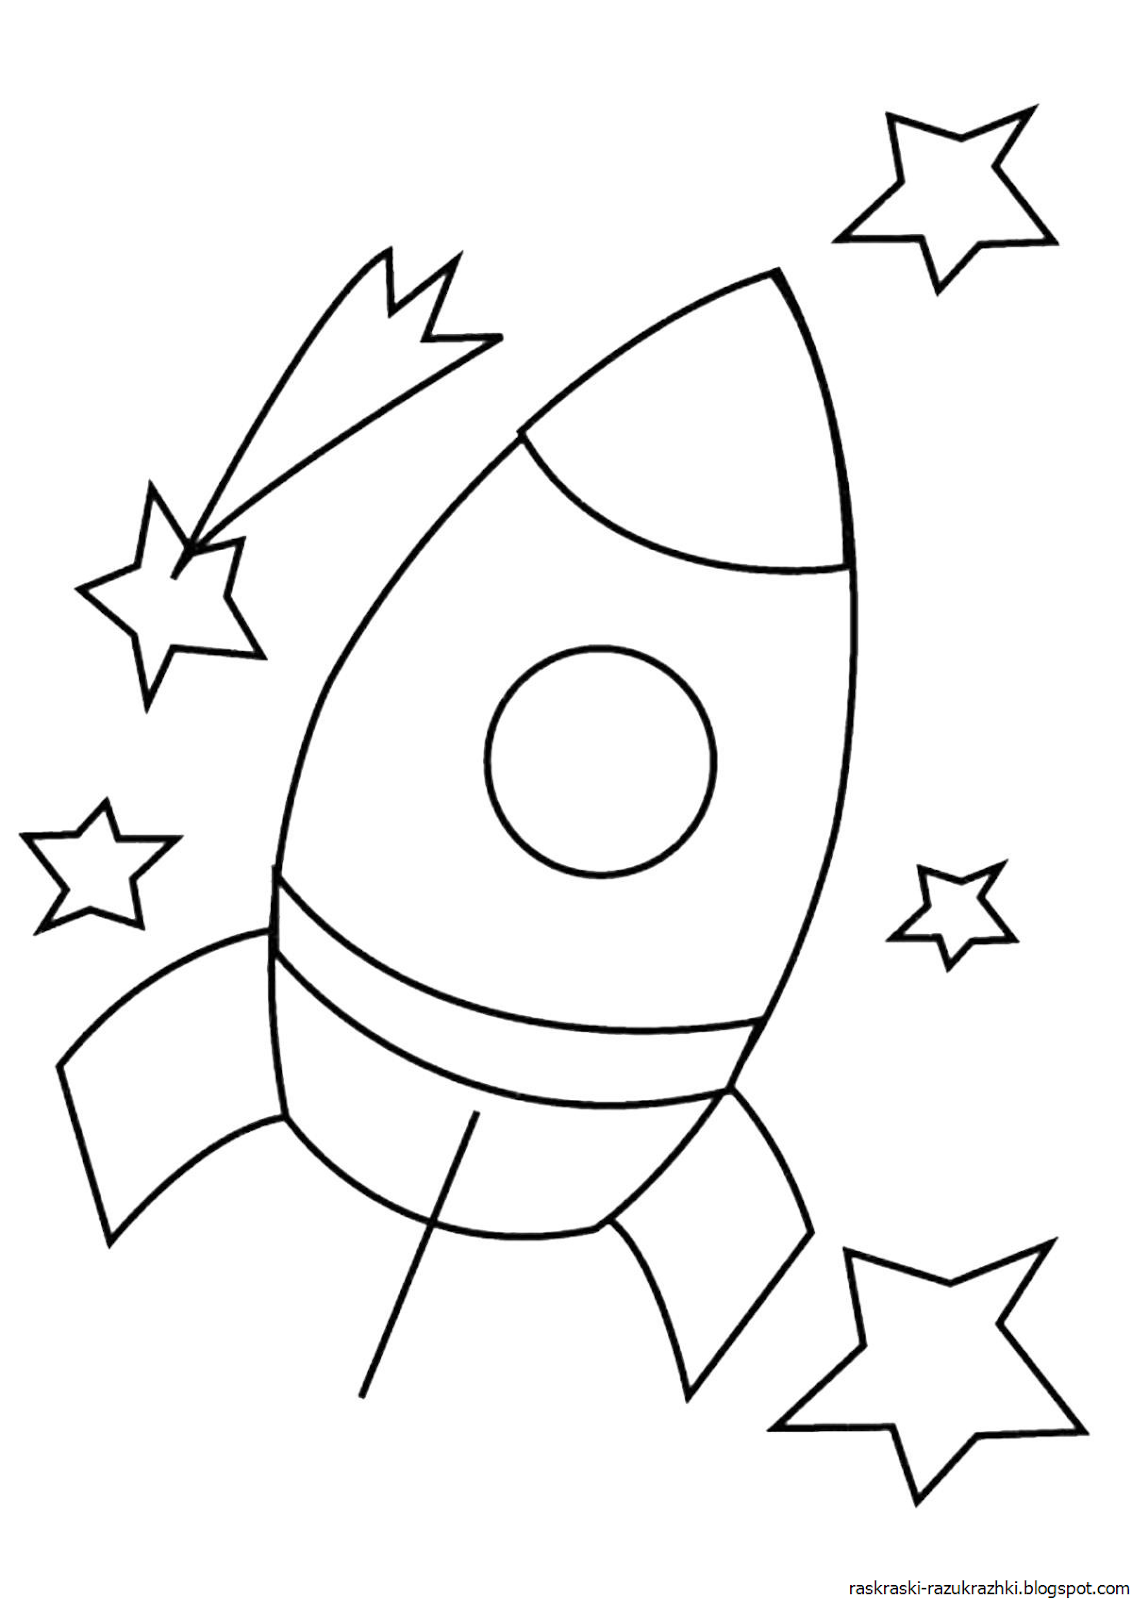 Ракета рисунок легко. Ракета раскраска. Ракета раскраска для детей. Космос раскраска для детей. Космическая ракета раскраска.